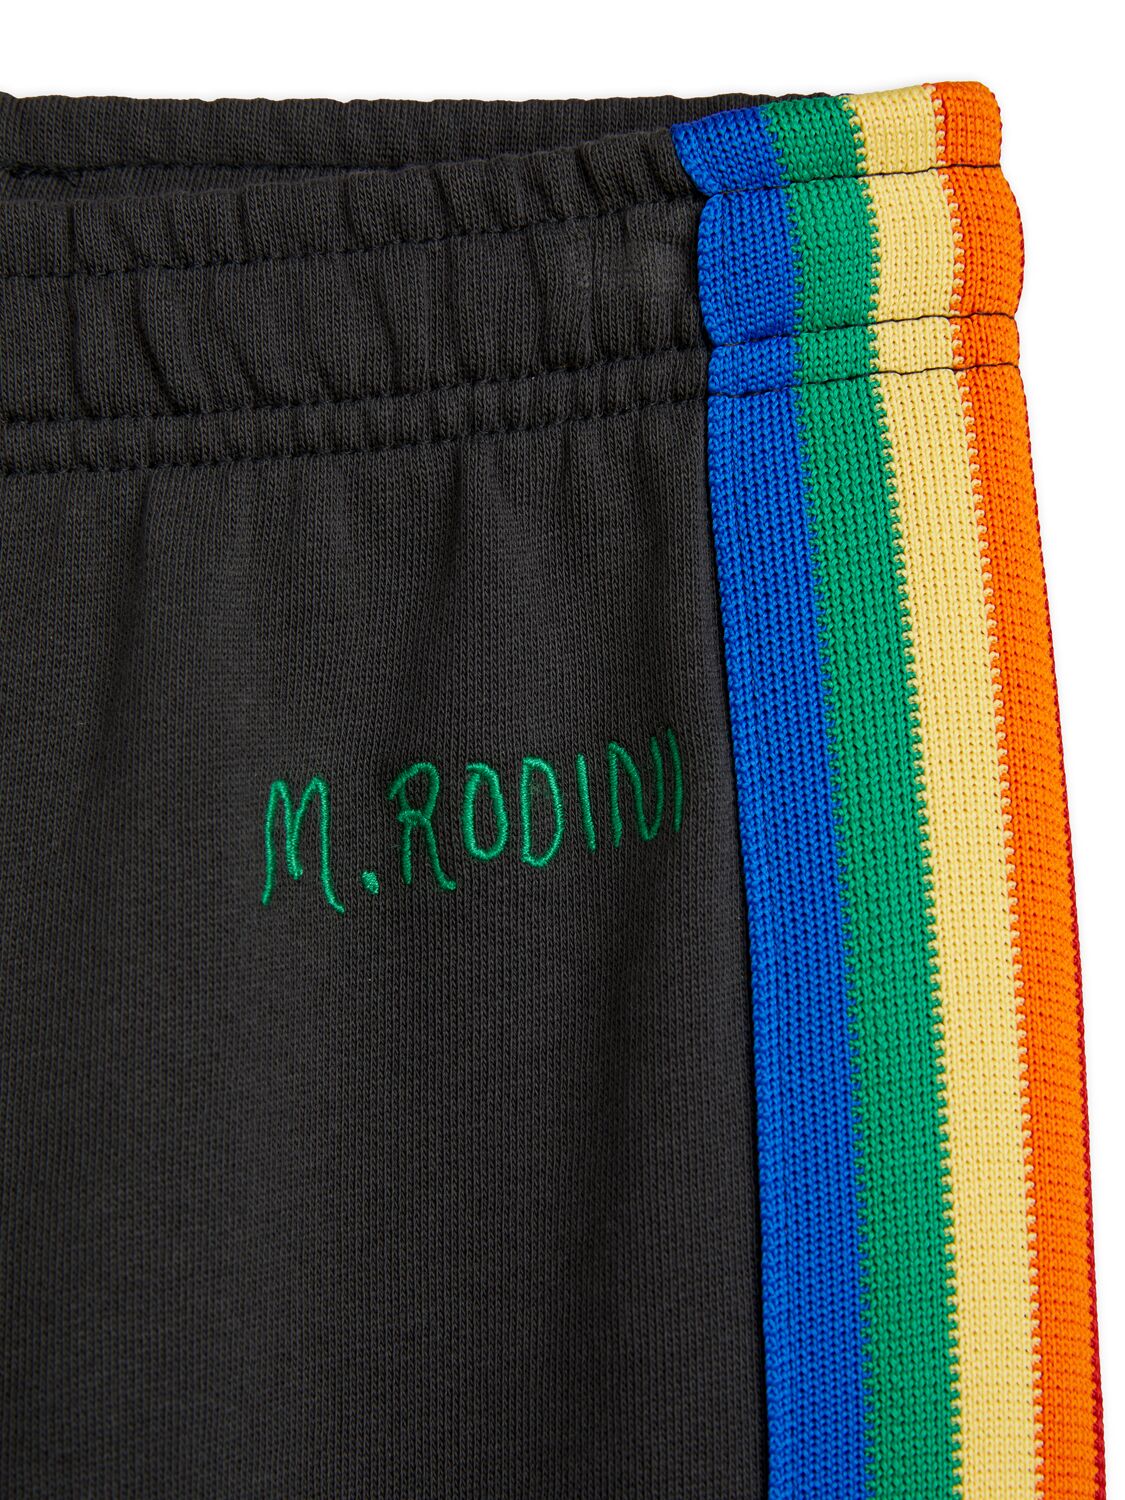 Shop Mini Rodini Organic Cotton Sweatpants In Black